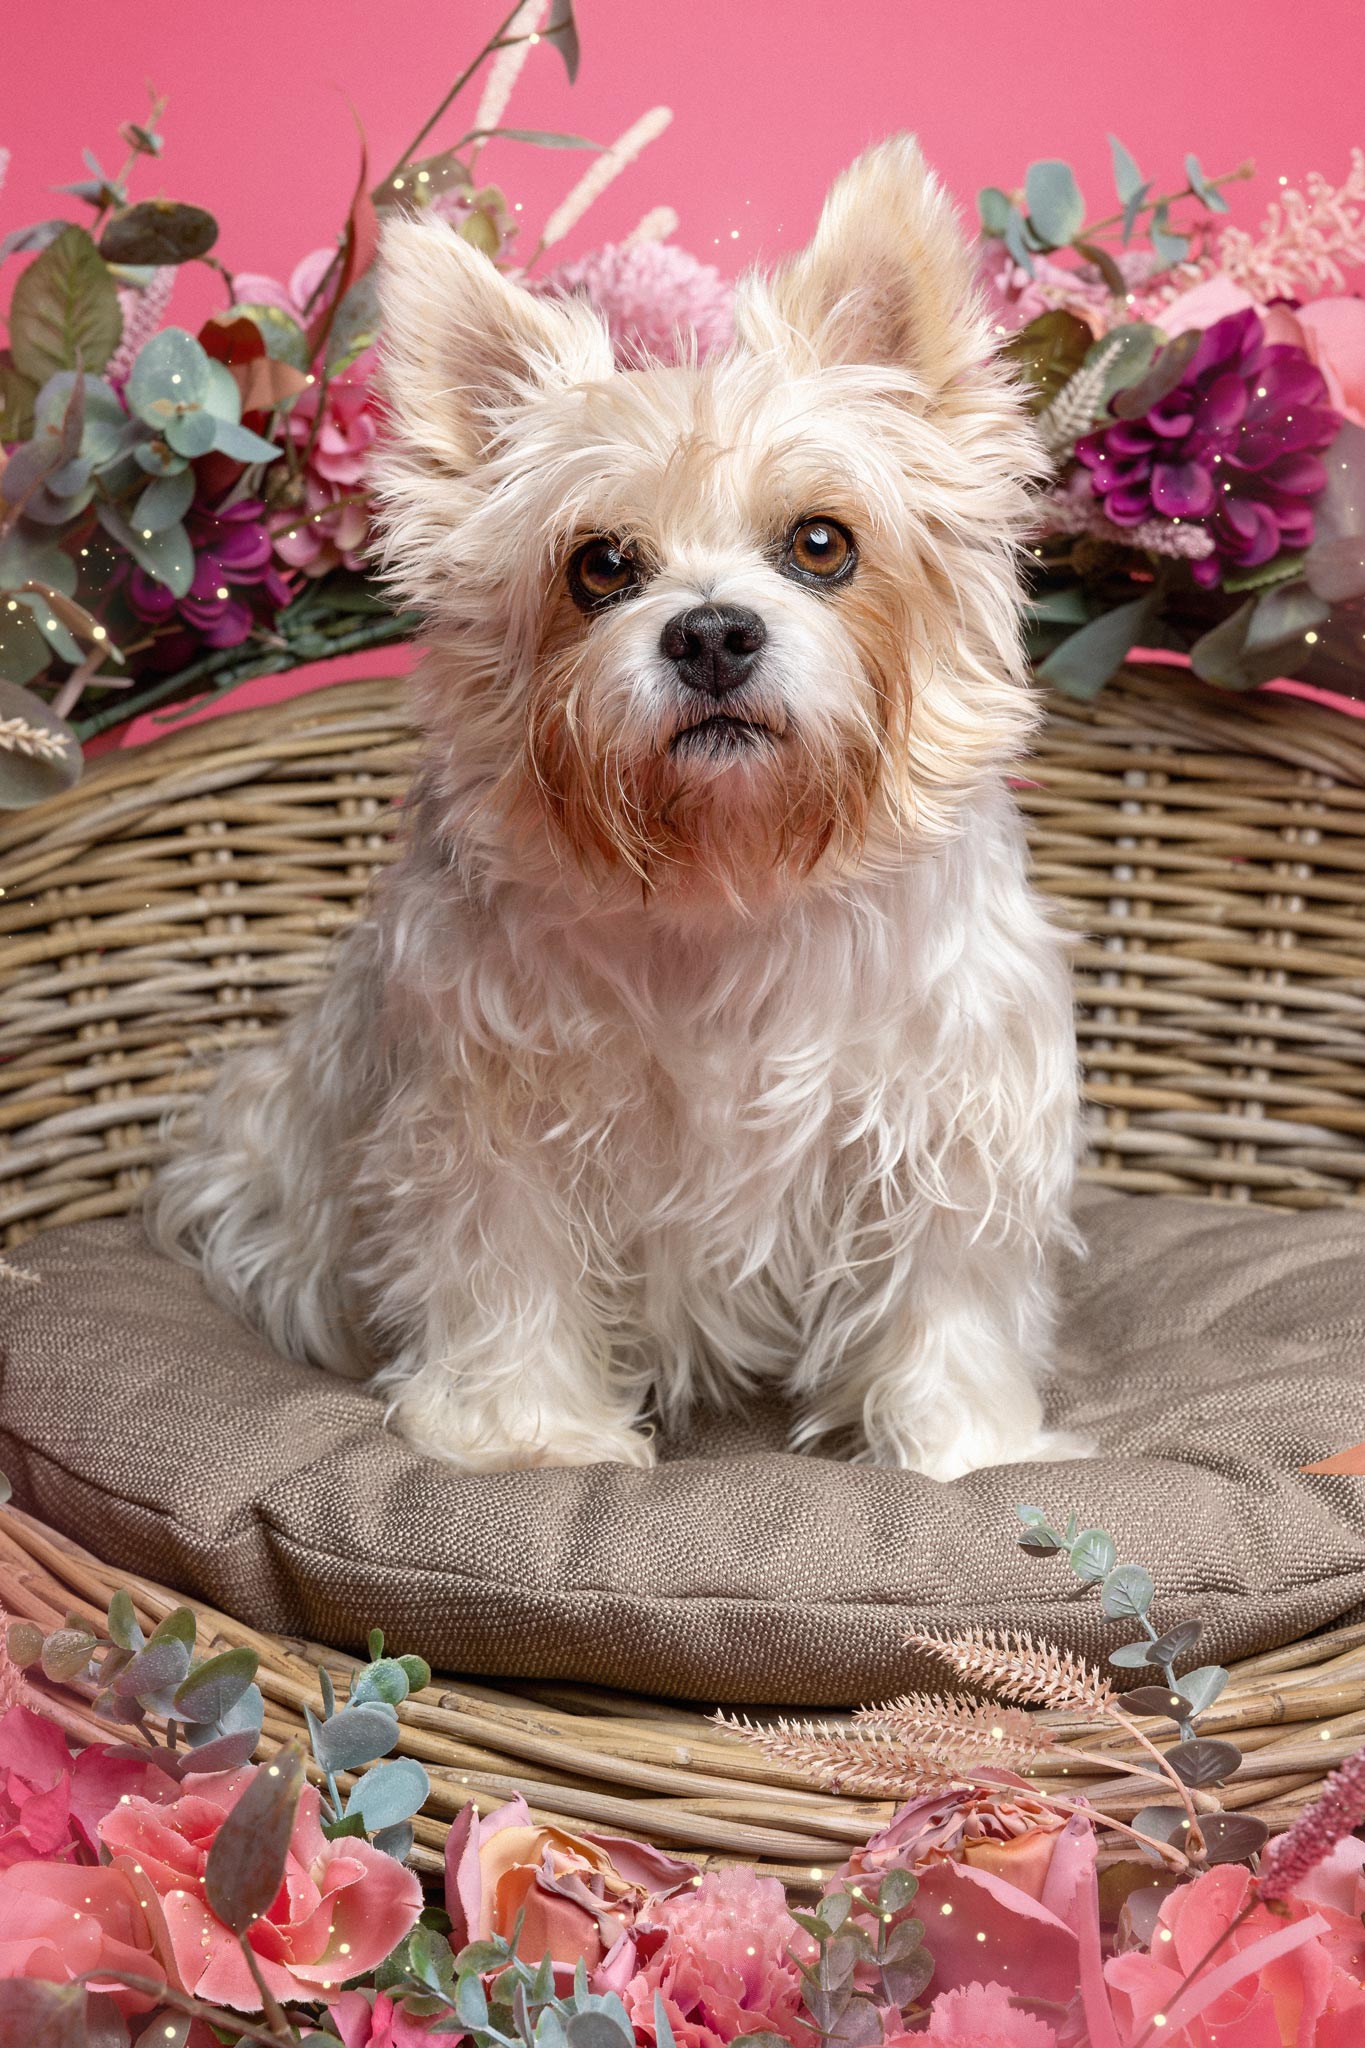 Ein Biewer Yorkshire Terrier in einem Hundekorb umrahmt von Blumen